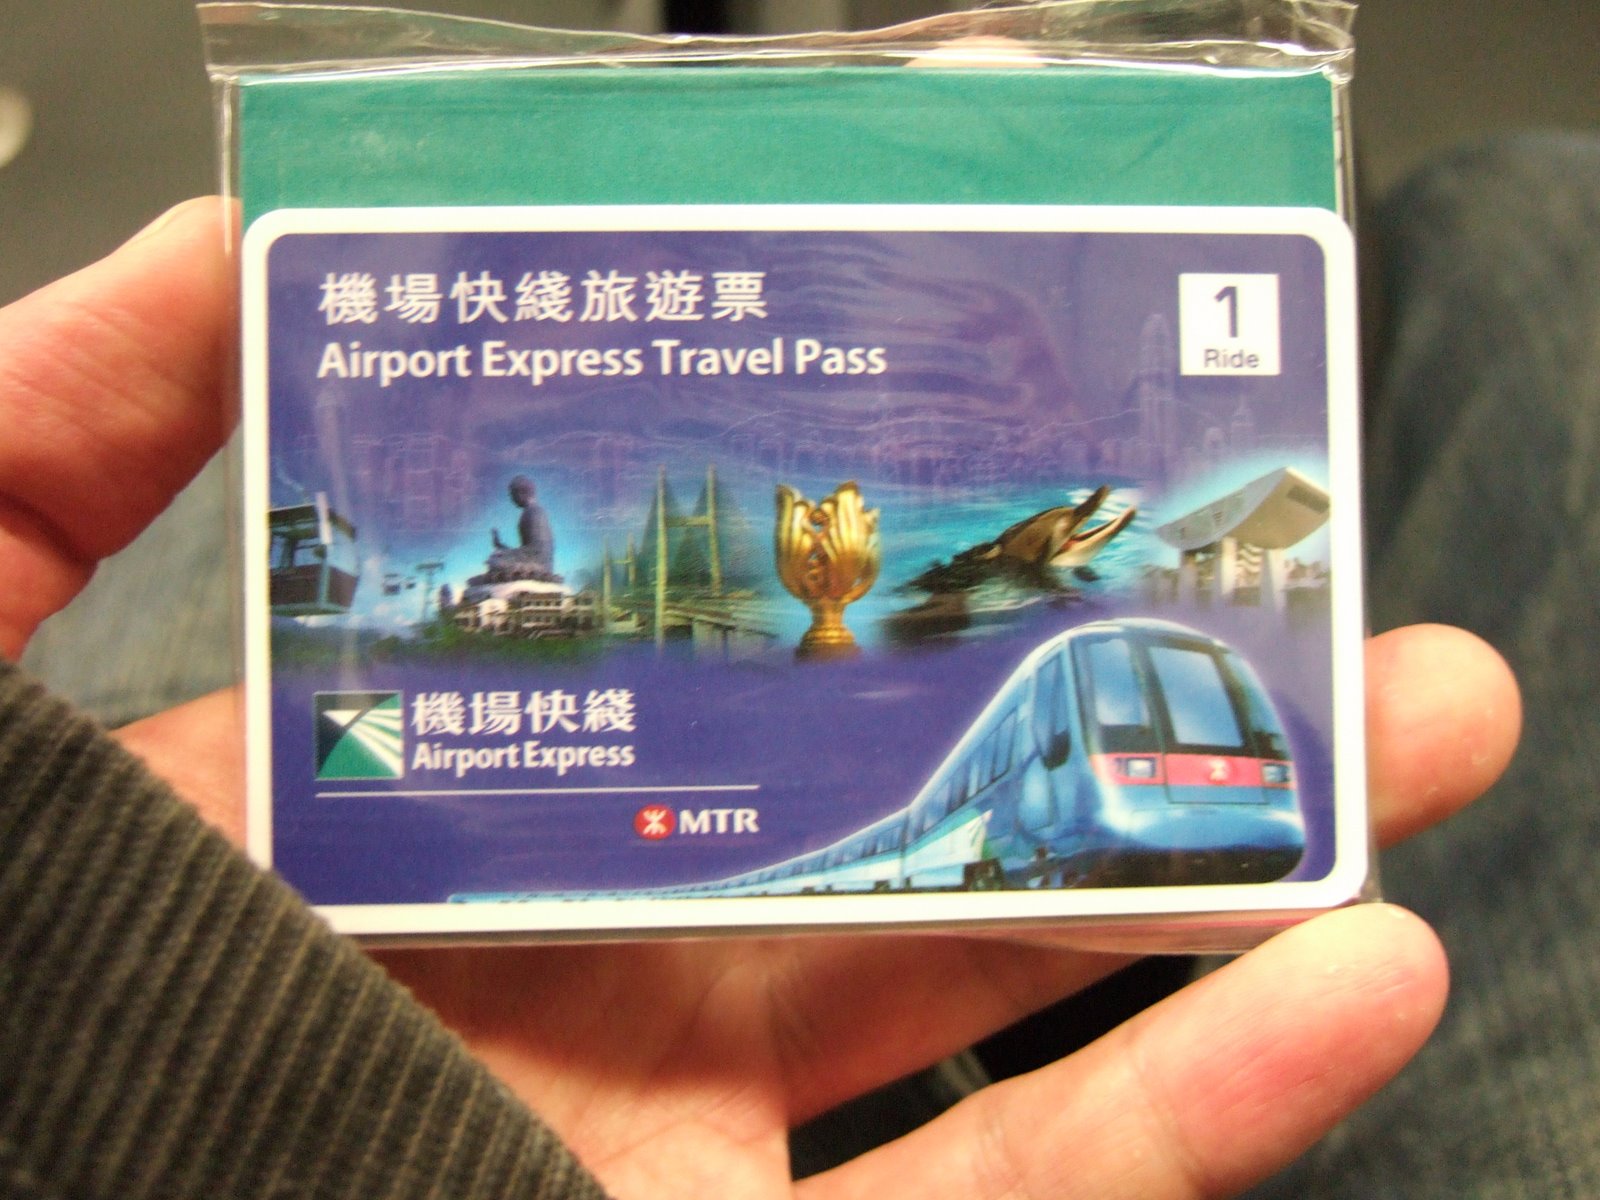 Airport Express Travel Pass Hong Kong Online